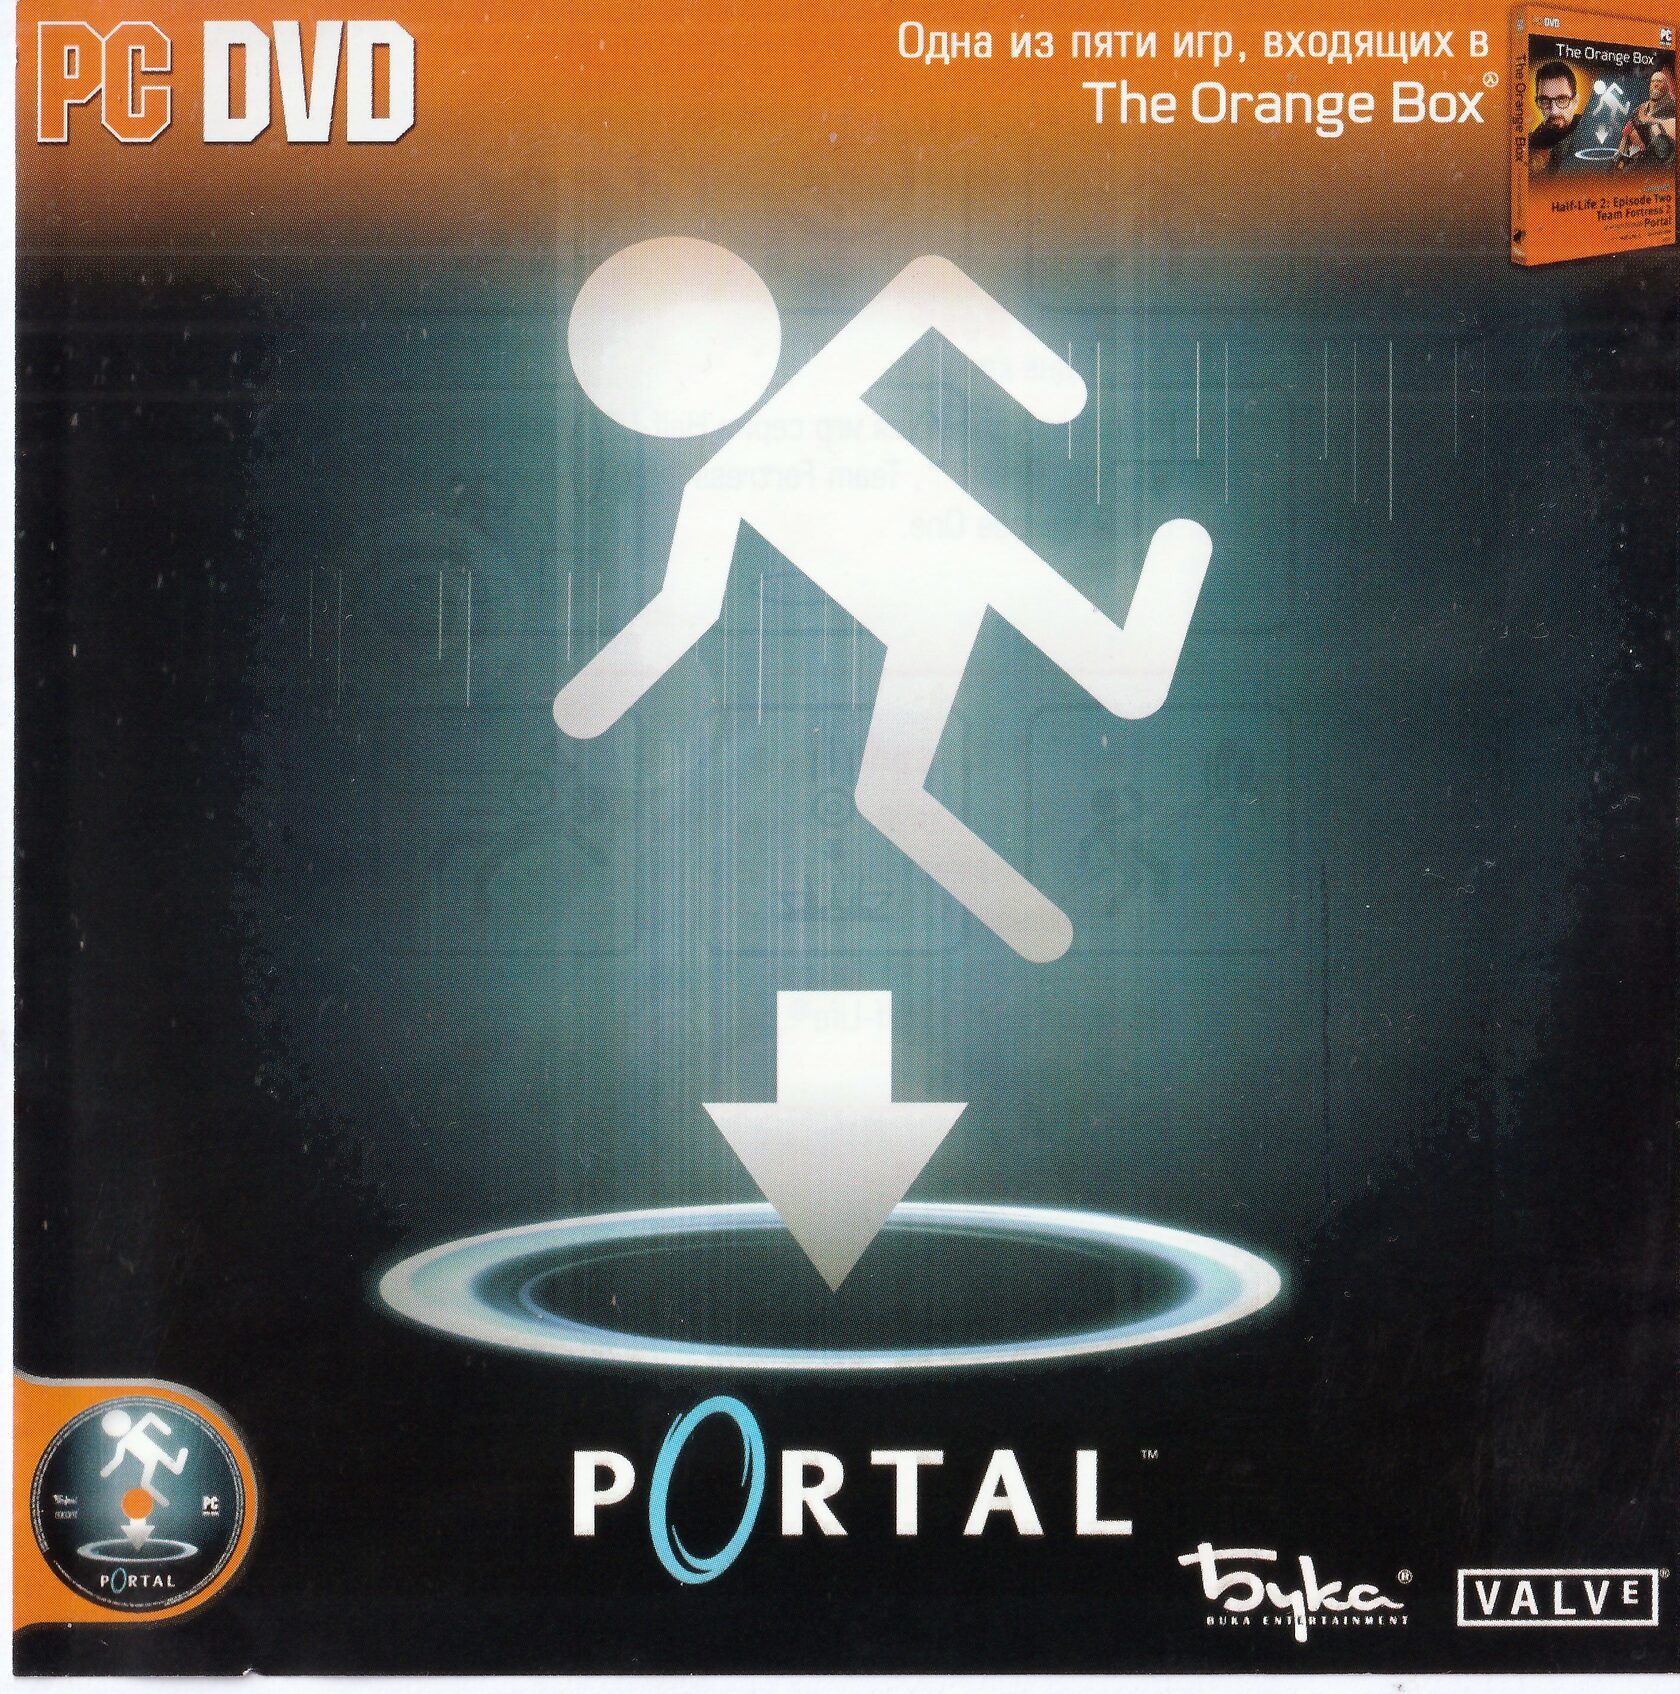 Portal 2 no dvd фото 72